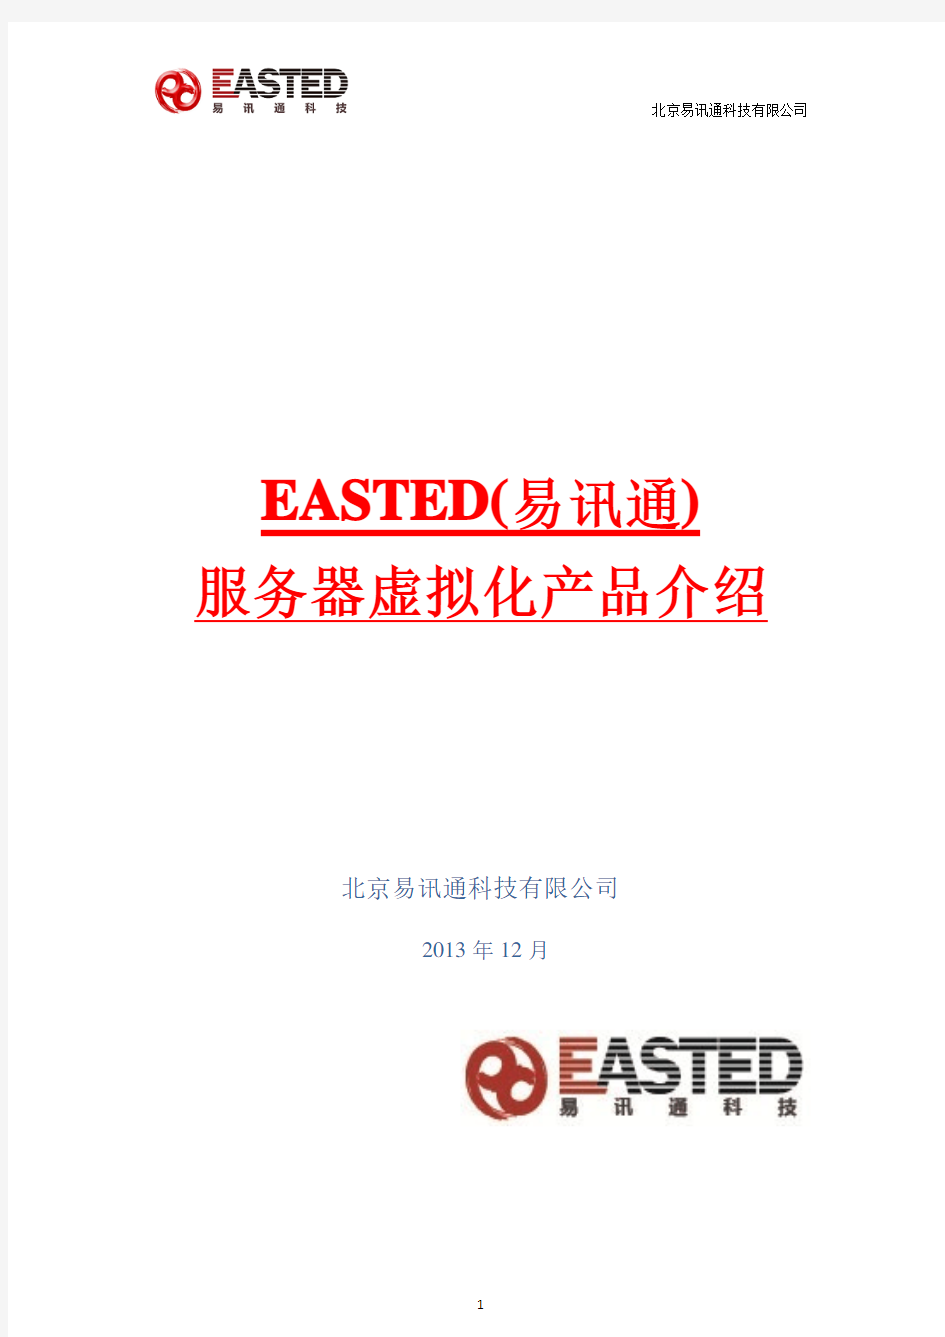 EASTED Vserver服务器虚拟化系统